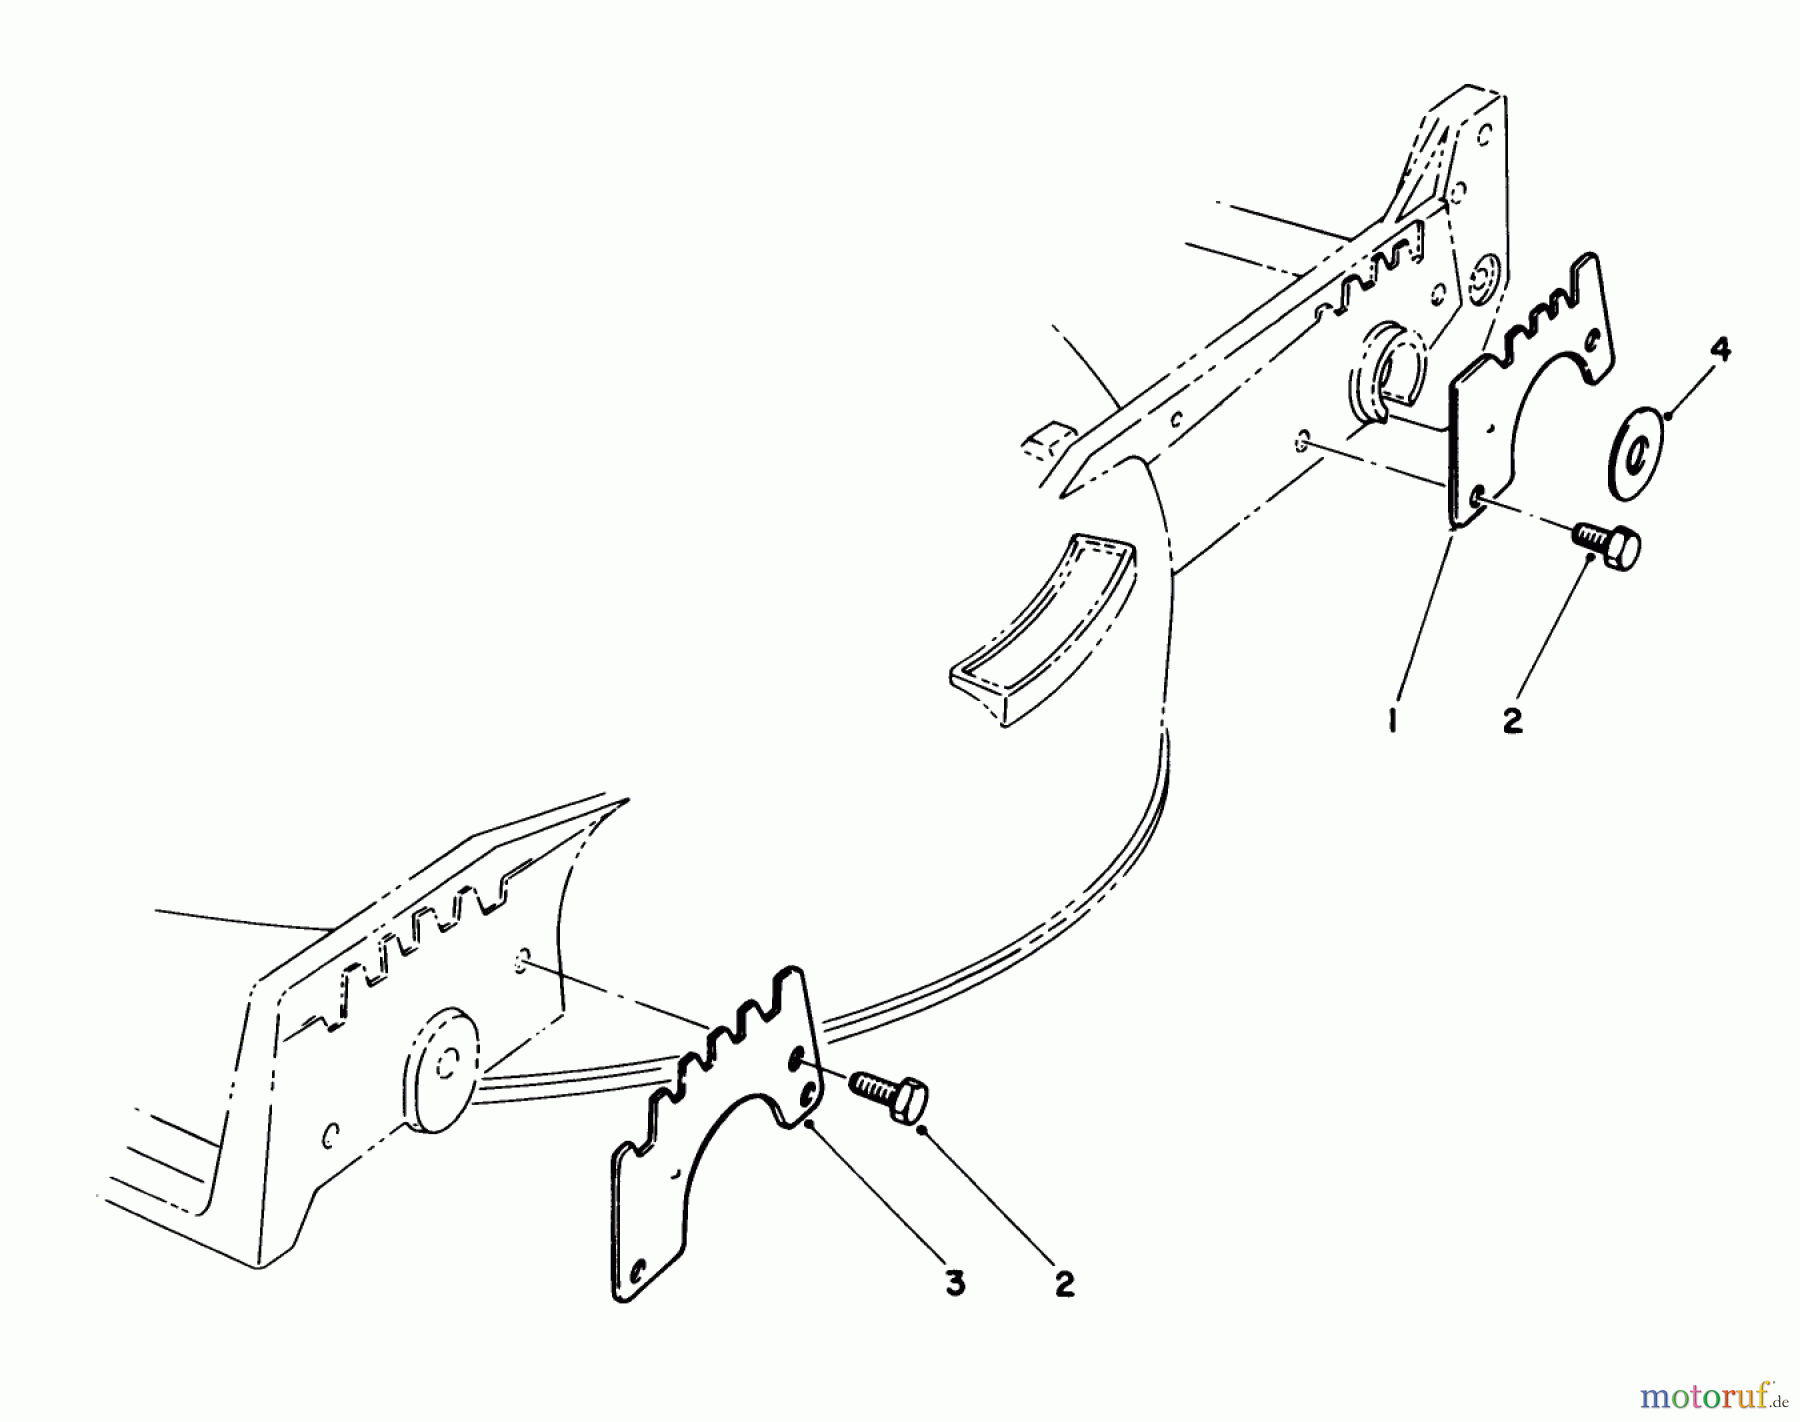  Toro Neu Mowers, Walk-Behind Seite 1 20526C - Toro Lawnmower, 1988 (8000001-8999999) WEAR PLATE KIT NO. 49-4080 (OPTIONAL)